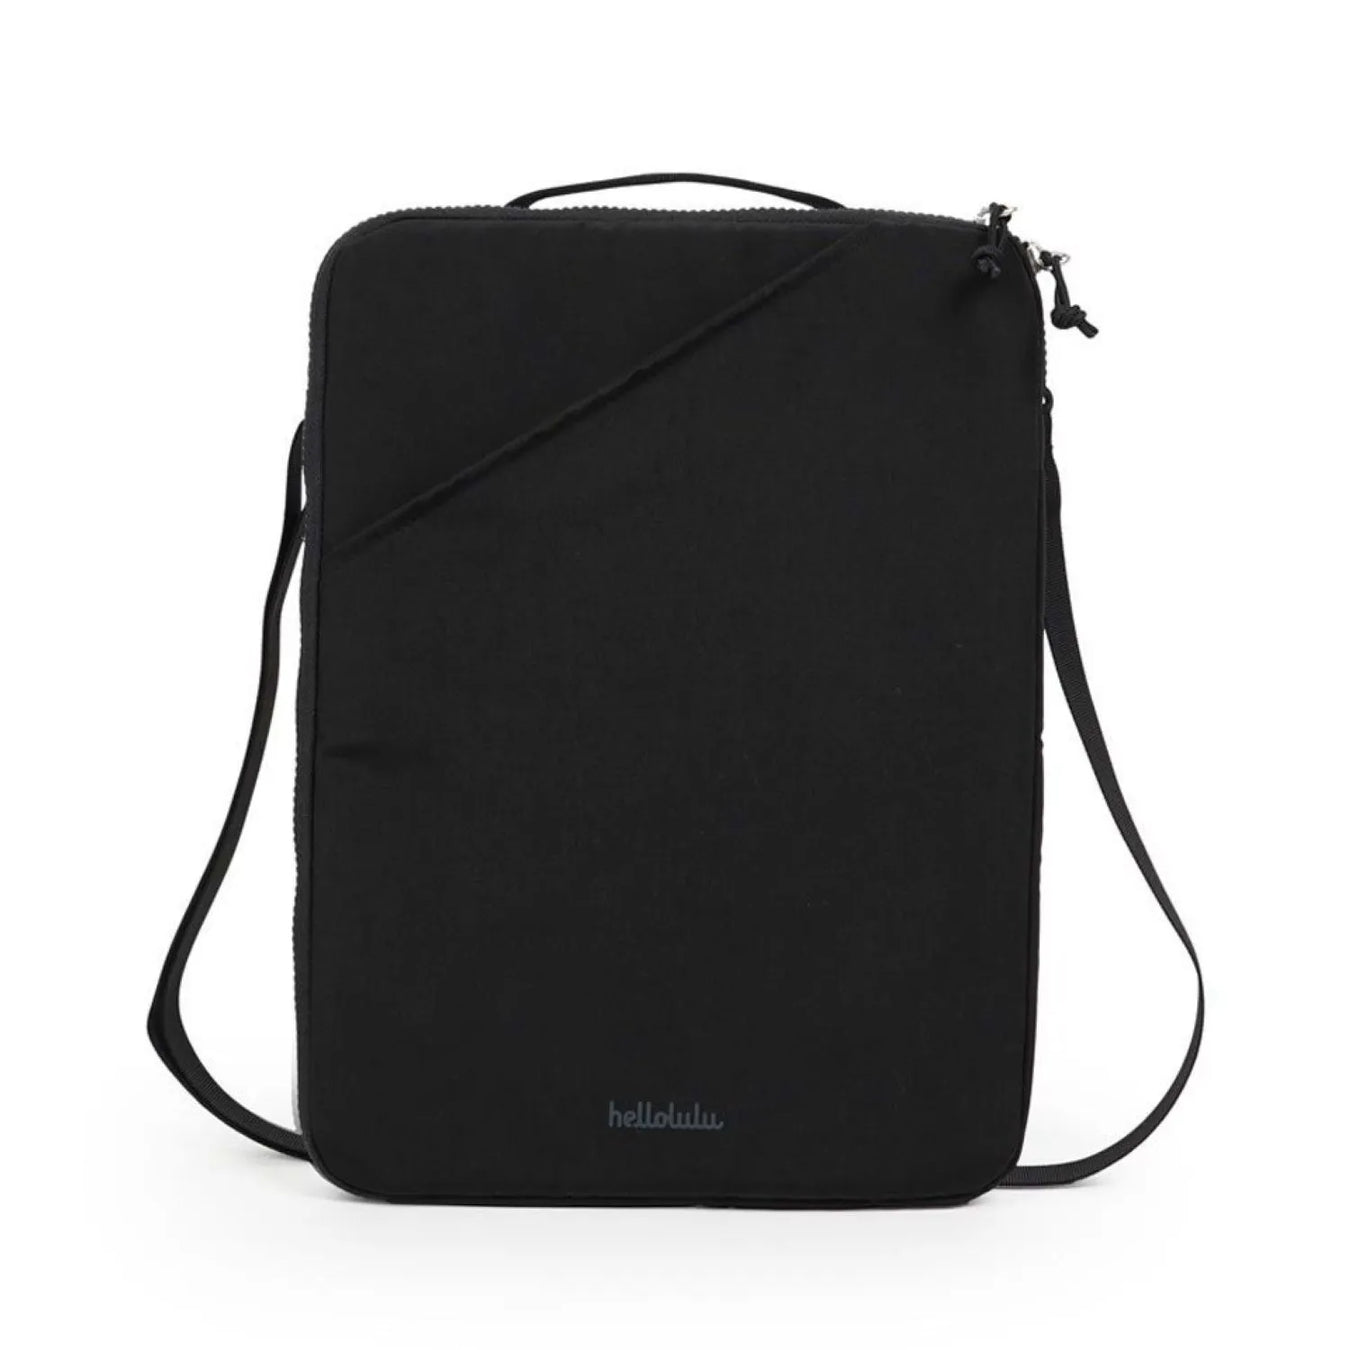 Hellolulu's Laptop Bags